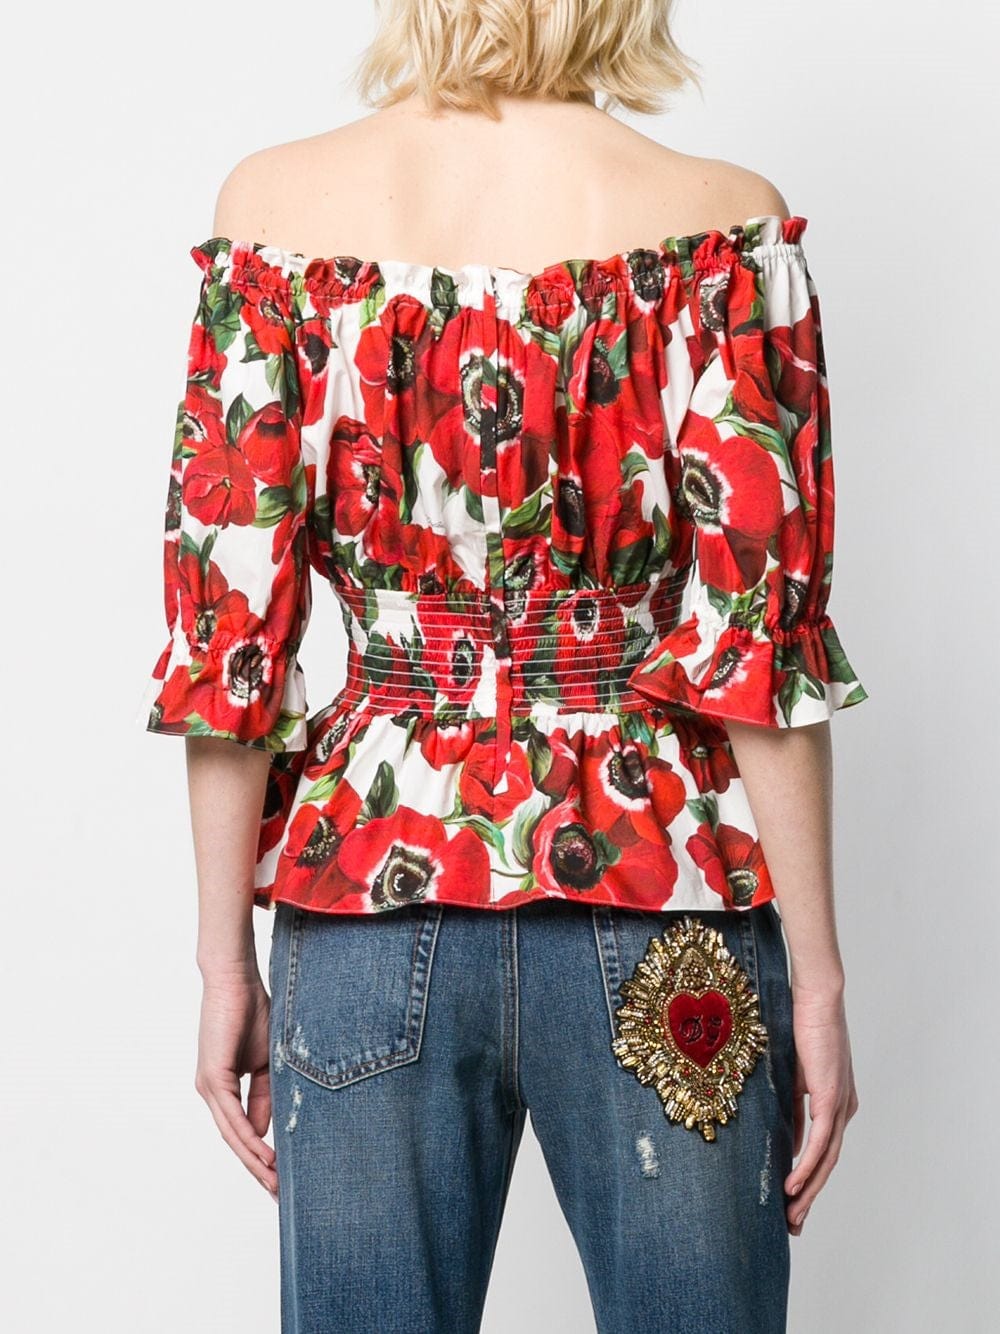 Dolce & Gabbana Off-Shoulder Floral Blouse